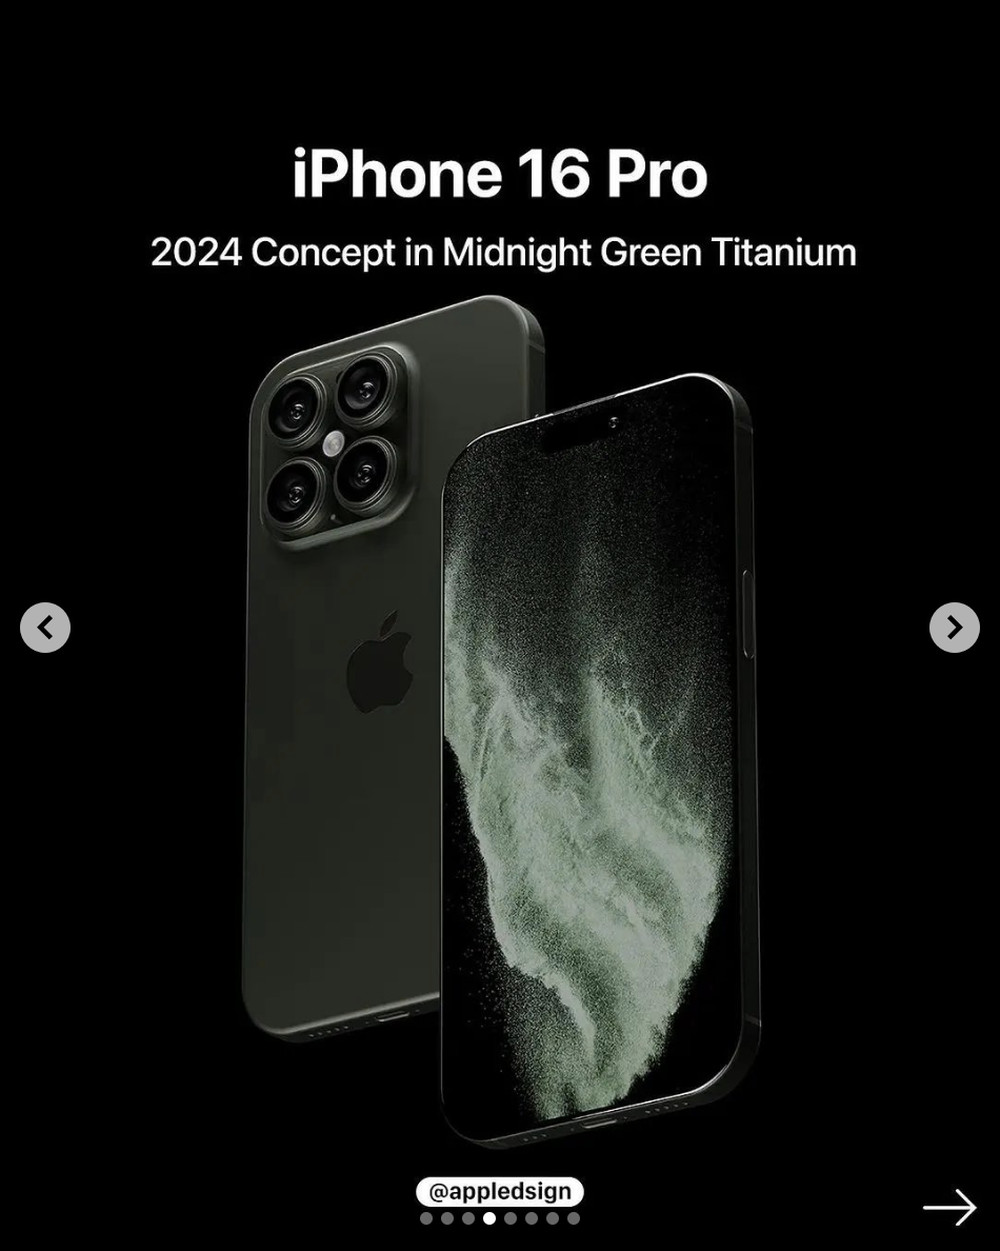 iPhone 16 hé lộ giao diện mới, thay đổi thiết kế với 4 camera, phối màu mới khiến dân tình “nứt mắt” - ảnh 5